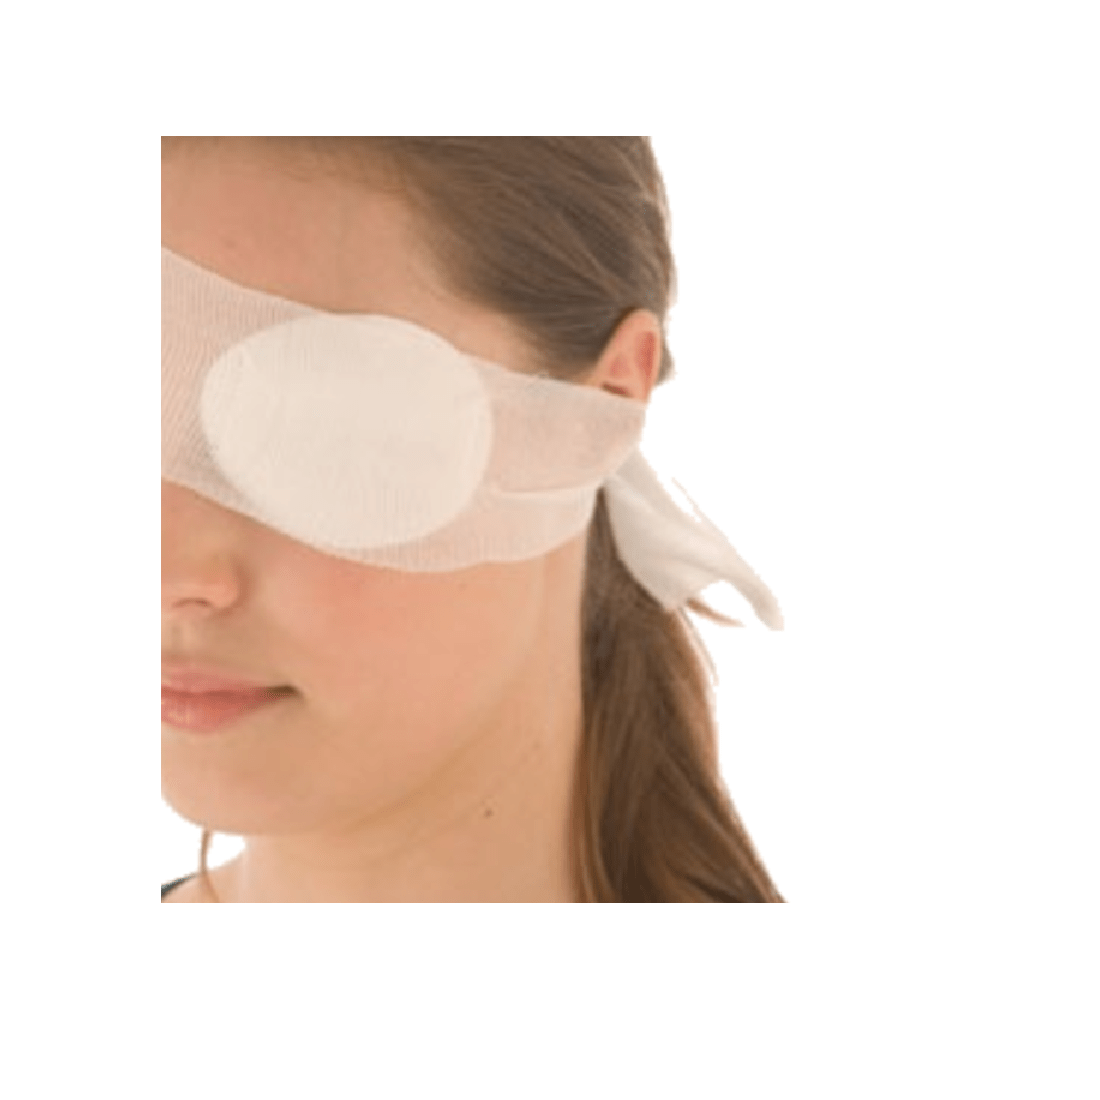 Eye bandages